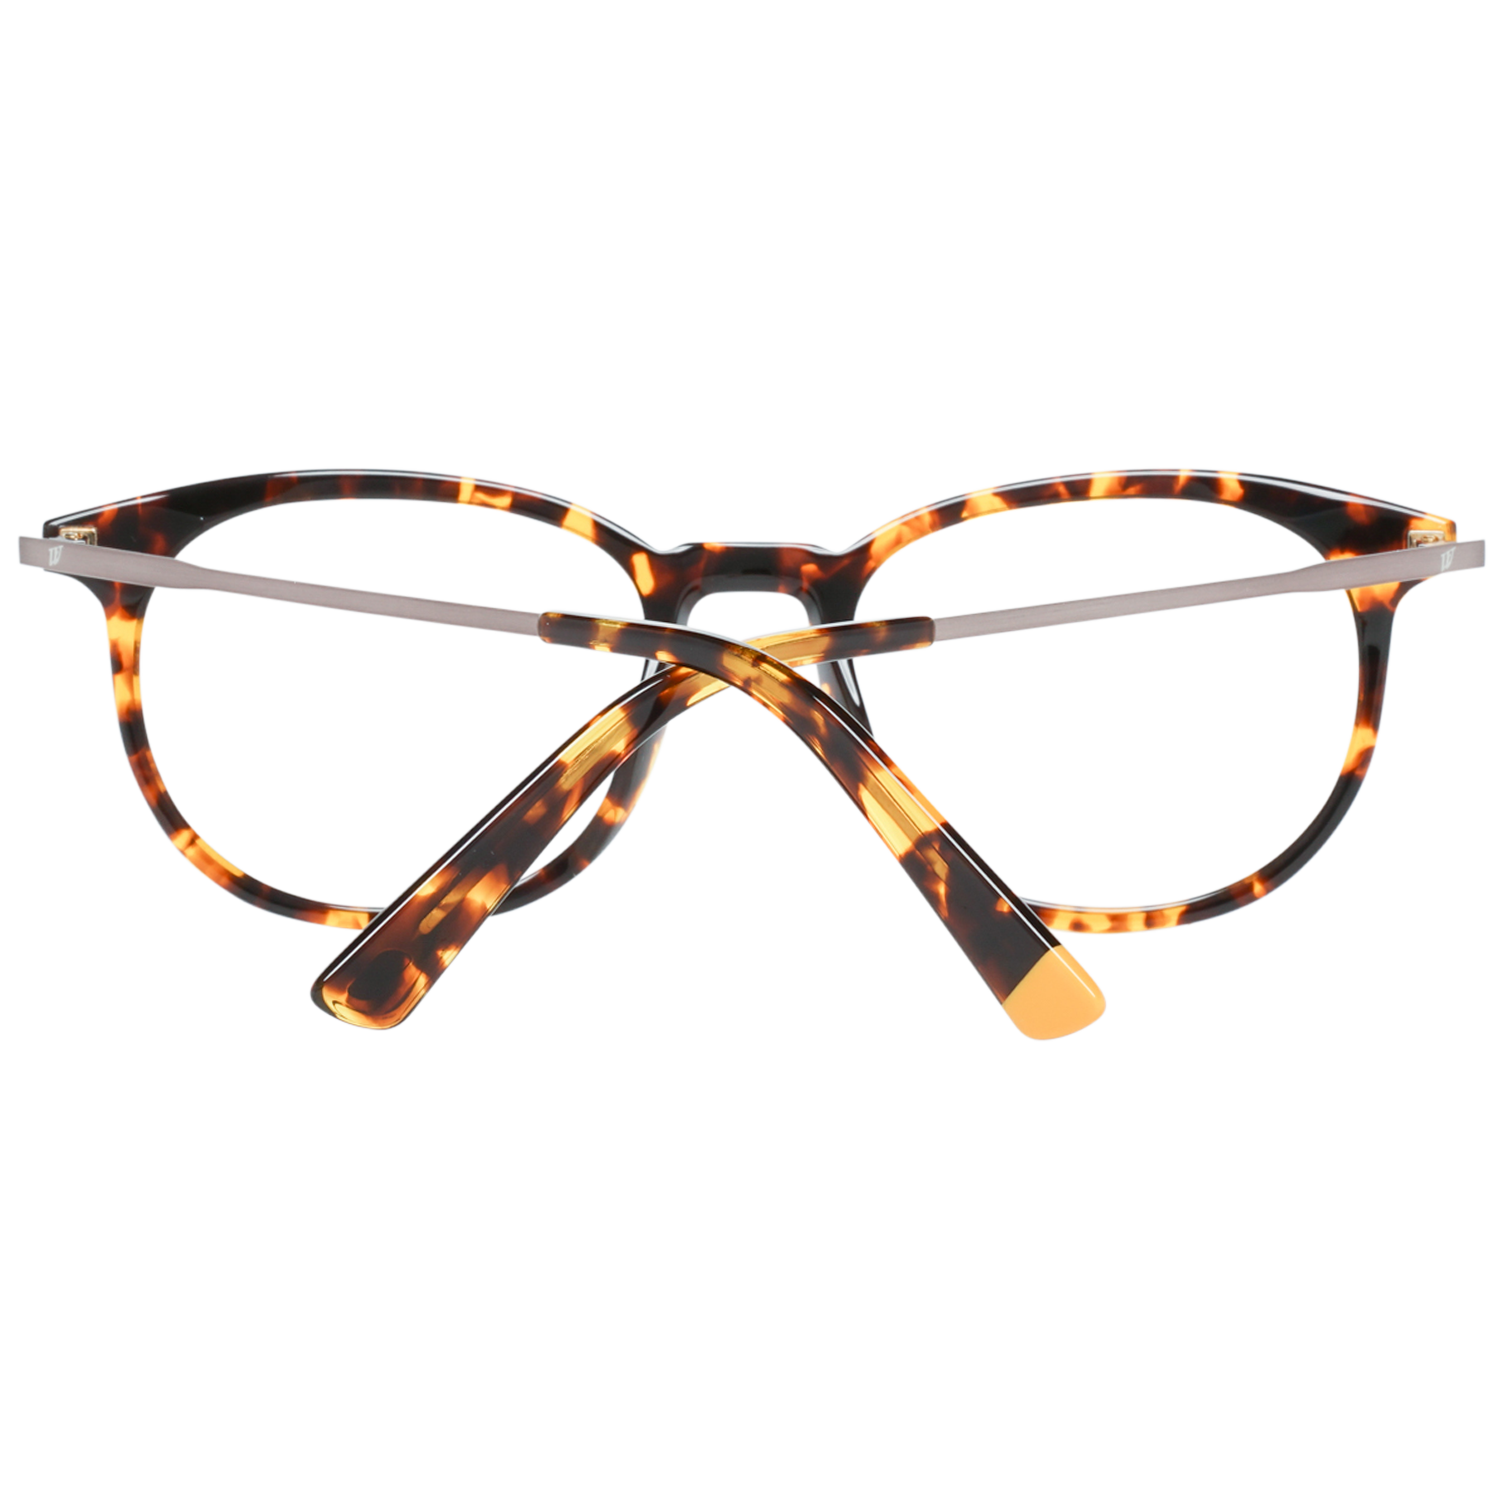 Web Frames Web Glasses Optical Frame WE5246 053 52 Eyeglasses Eyewear UK USA Australia 